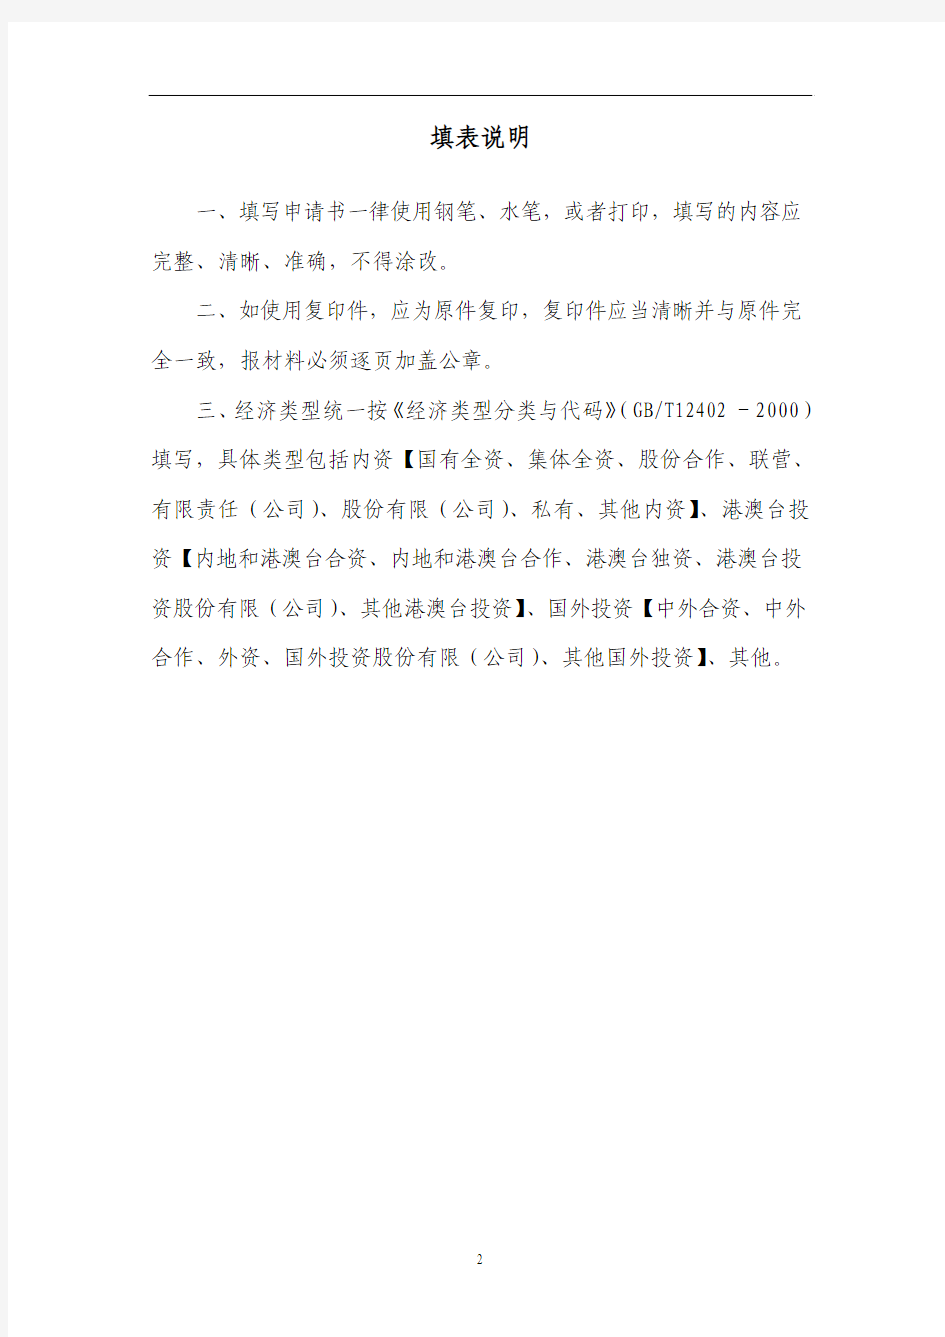 上海公共场所卫生许可证申请书填写示范文本-徐汇区行政服务中心